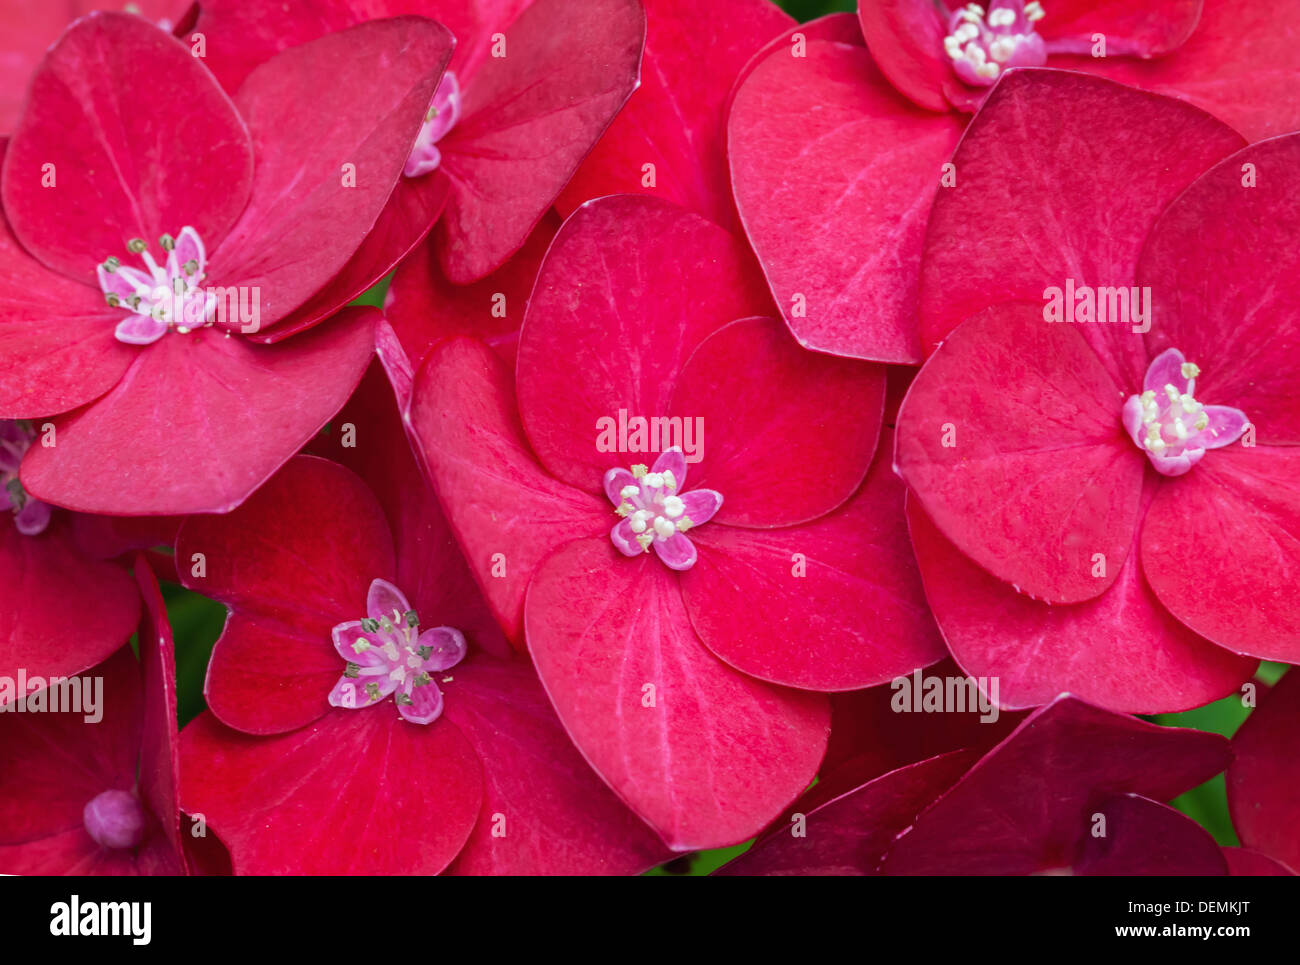 Macro Fotografía de hortensia flores de color rojo brillante Foto de stock